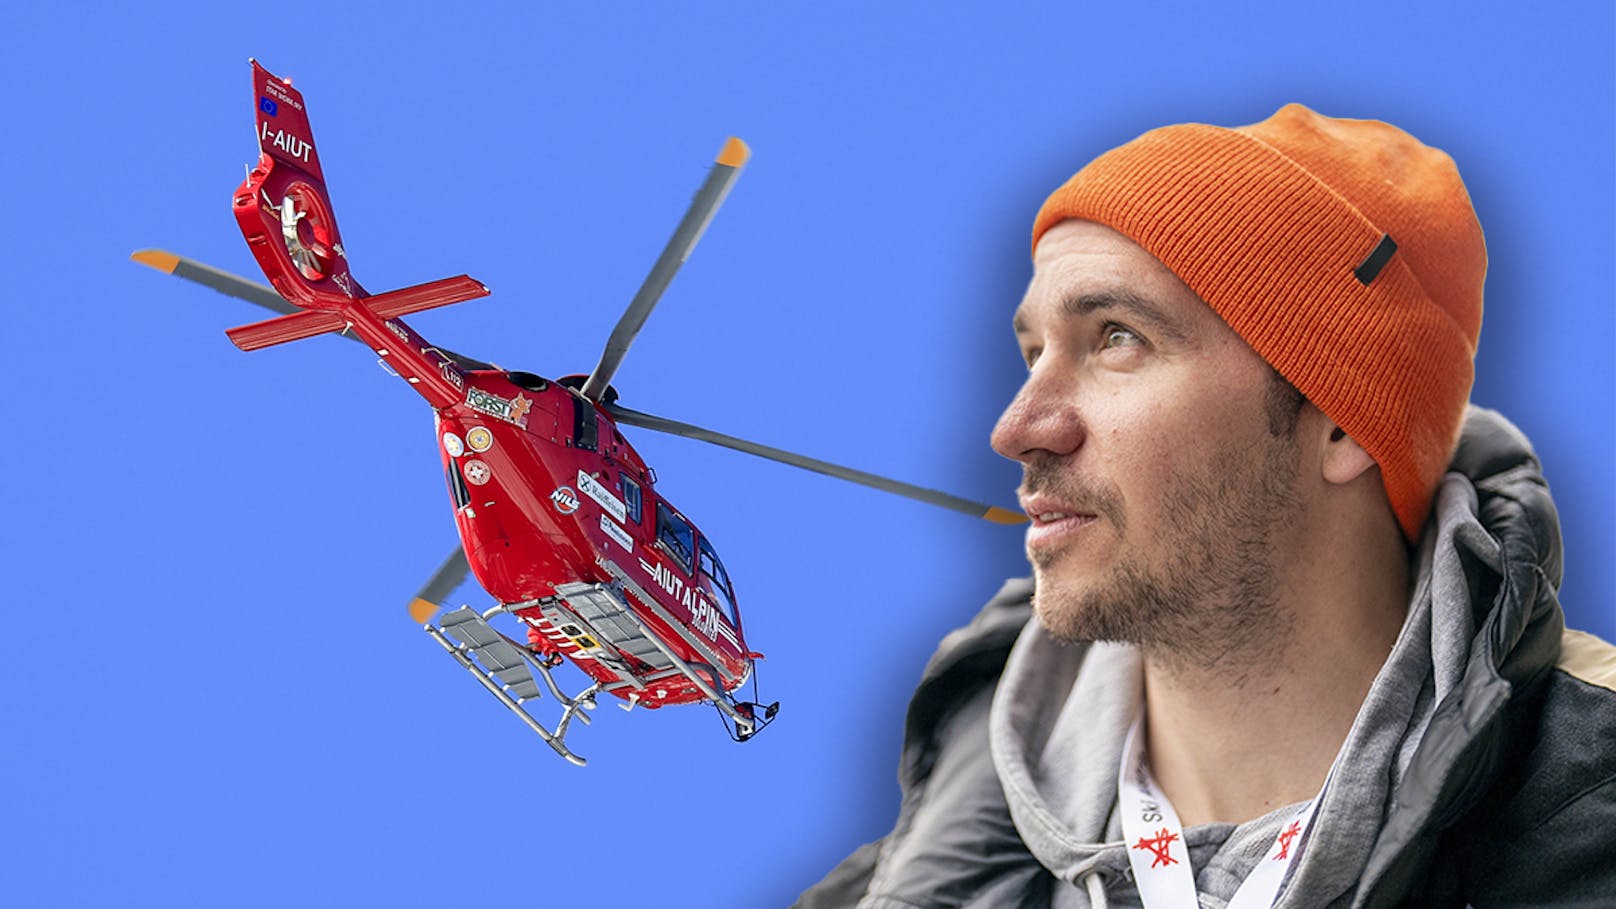 Harte Neureuther-Analyse nach schweren Ski-Stürzen